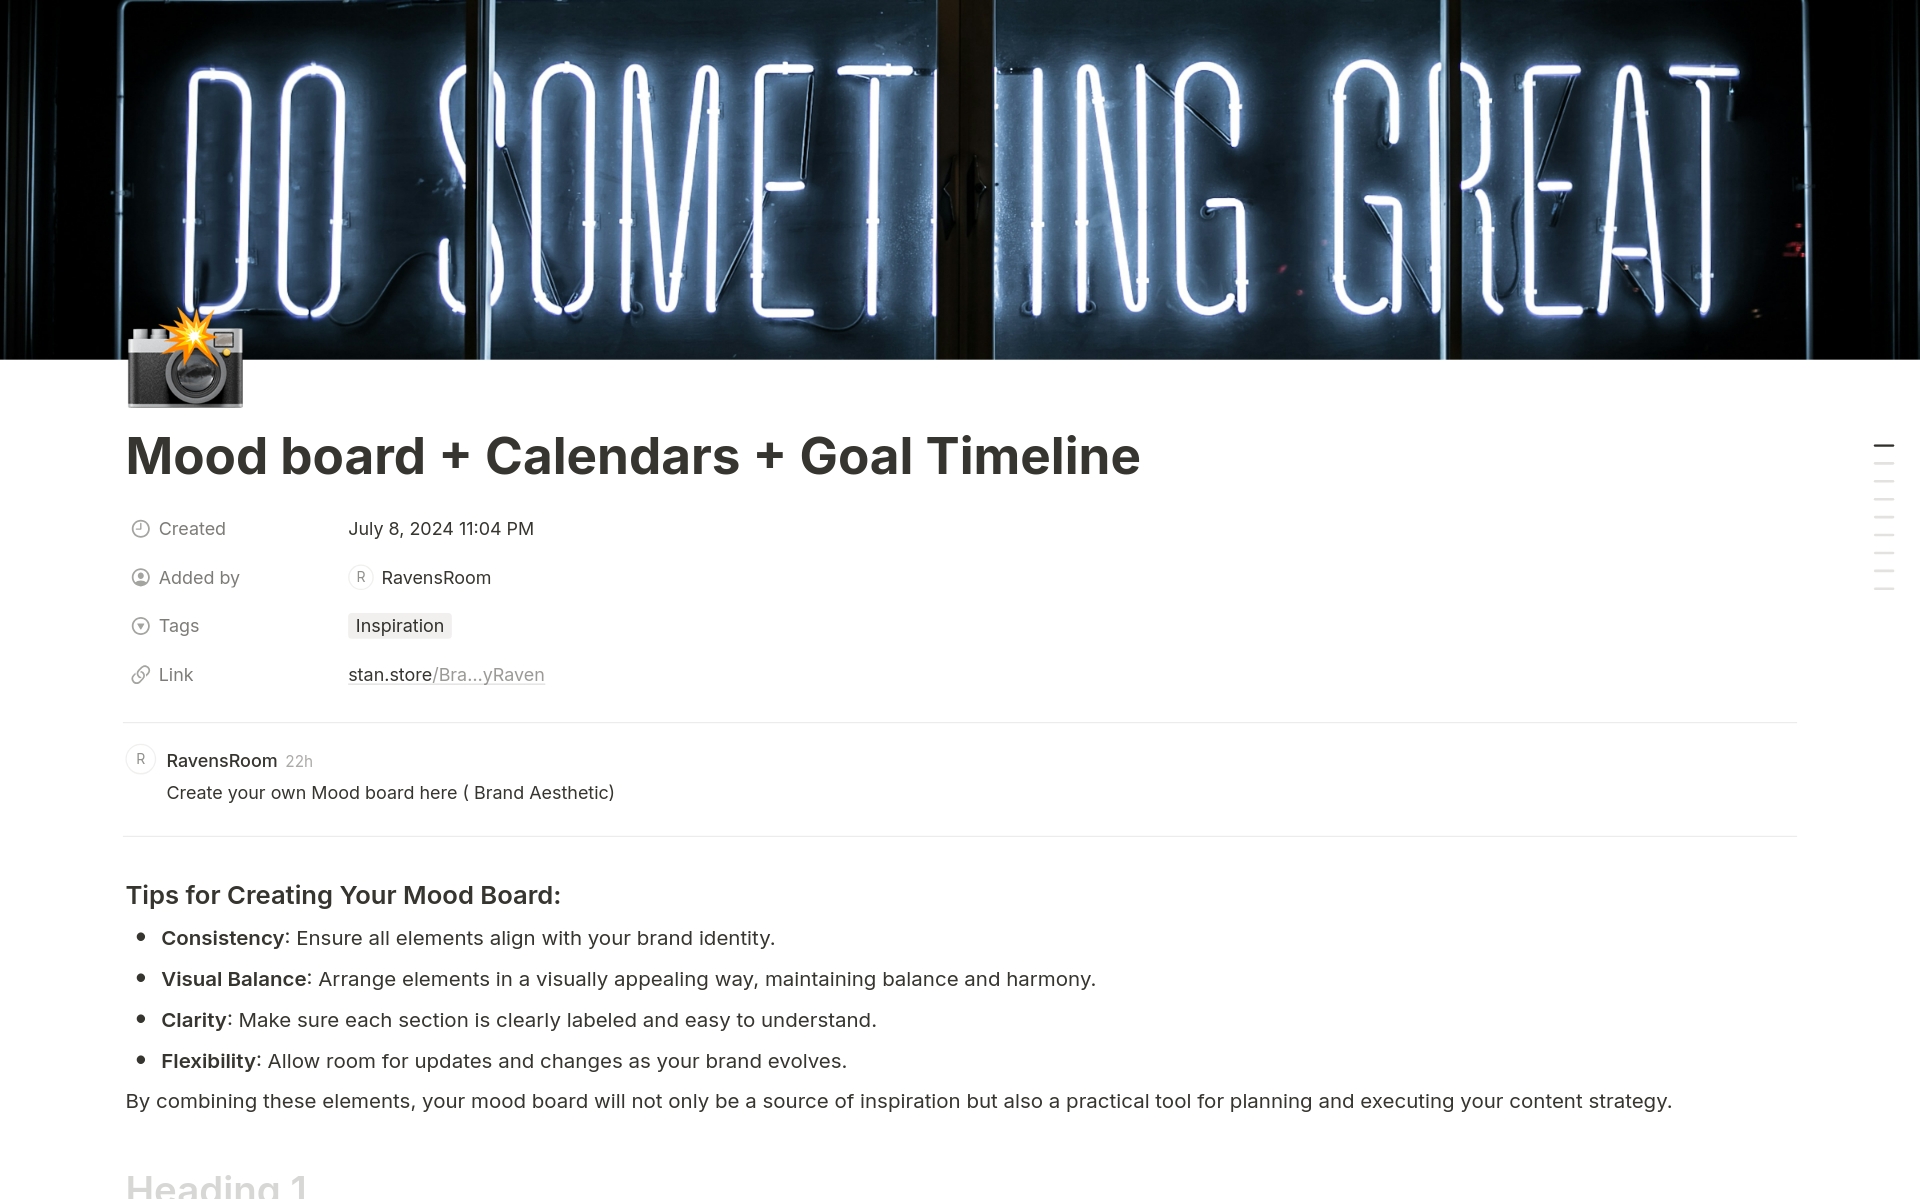 Uma prévia do modelo para Content Calendar + Mood Board + Goal Timeline